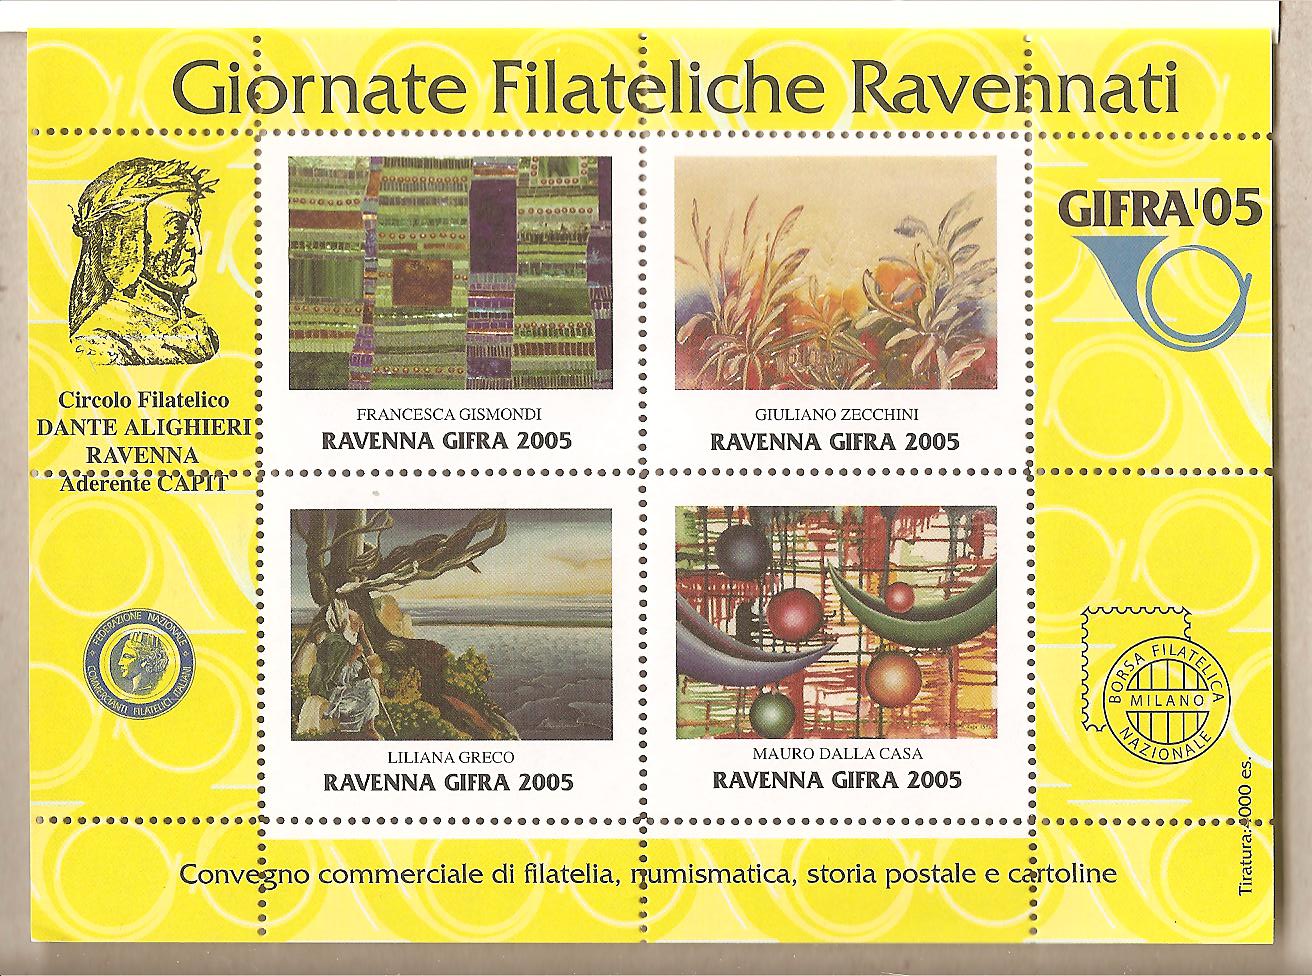 39629 - Italia - foglietto erinnofilo: Giornate Filateliche Ravennate - 2005